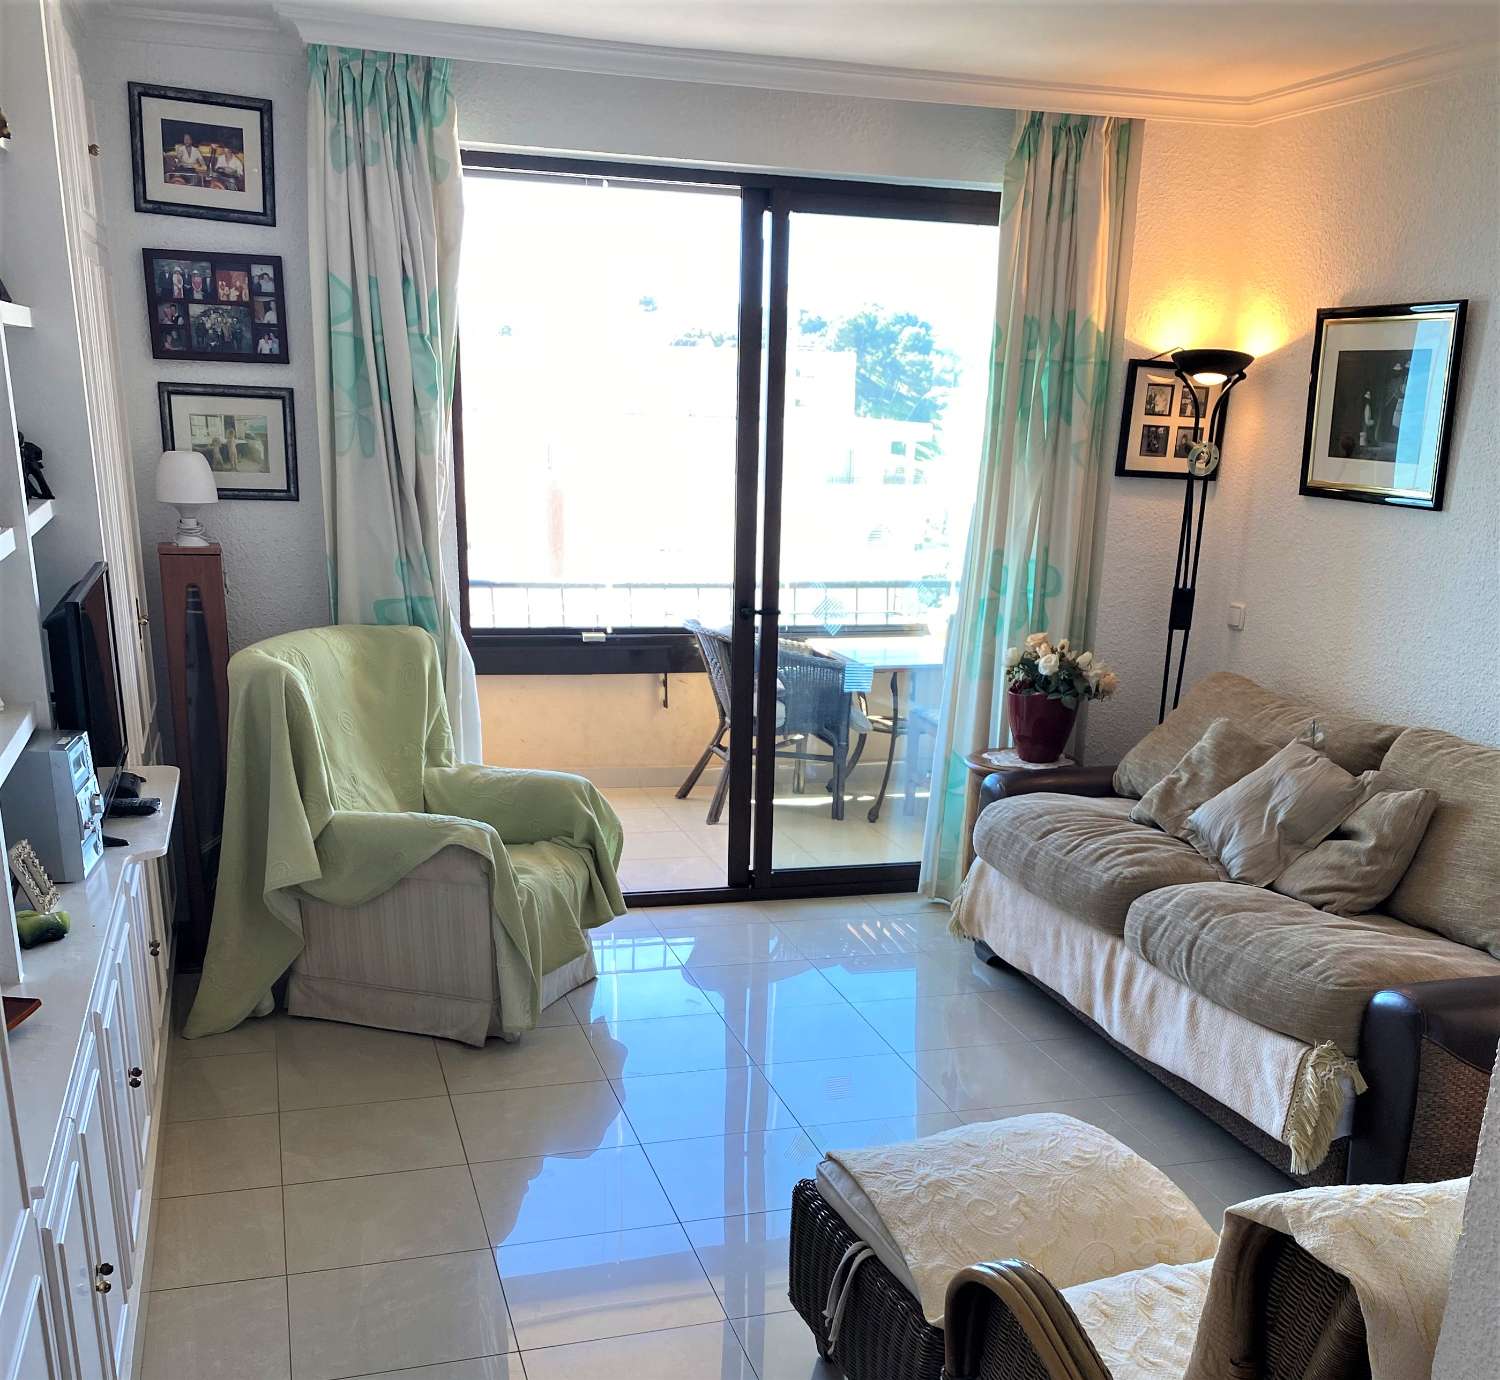 Fuengirola, 1 slaapkamer, panoramisch uitzicht, gratis wifi, zwembad, eerstelijns strand.